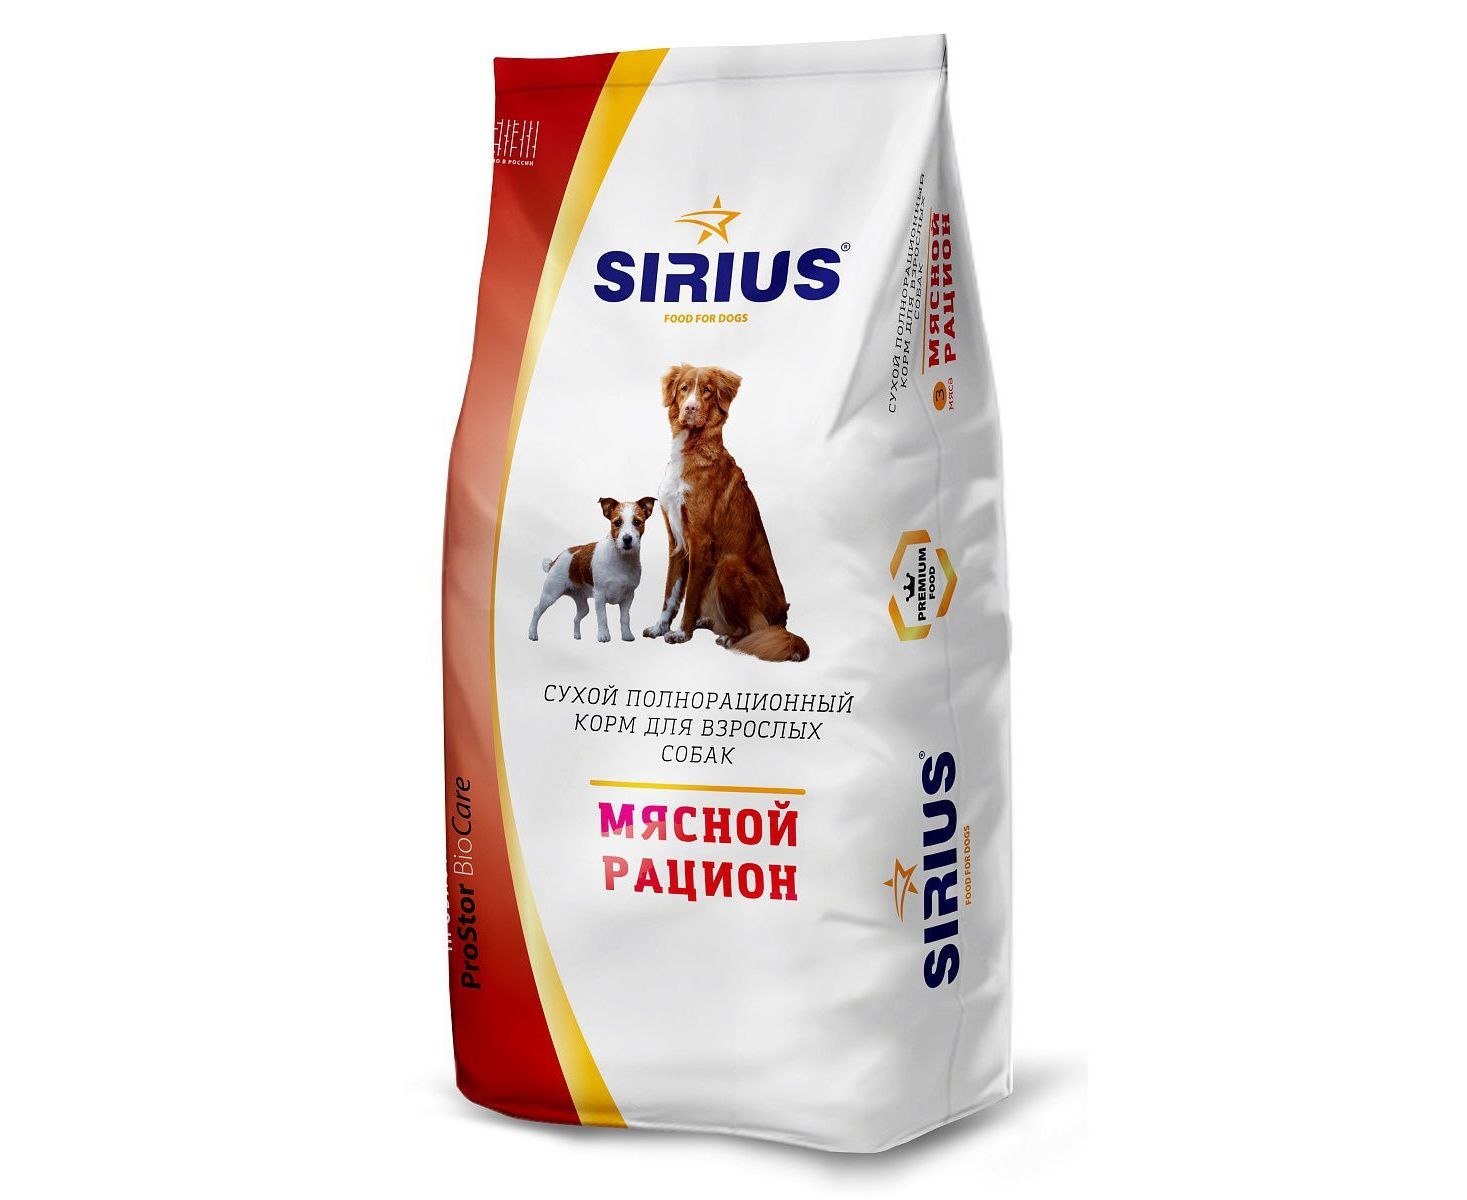 Корм сириус для собак 15 кг. Сириус корм для собак 15 кг. Корм Сириус для щенков 15кг. Sirius сухой корм для собак 15 кг. Корм Сириус для собак 20 кг.